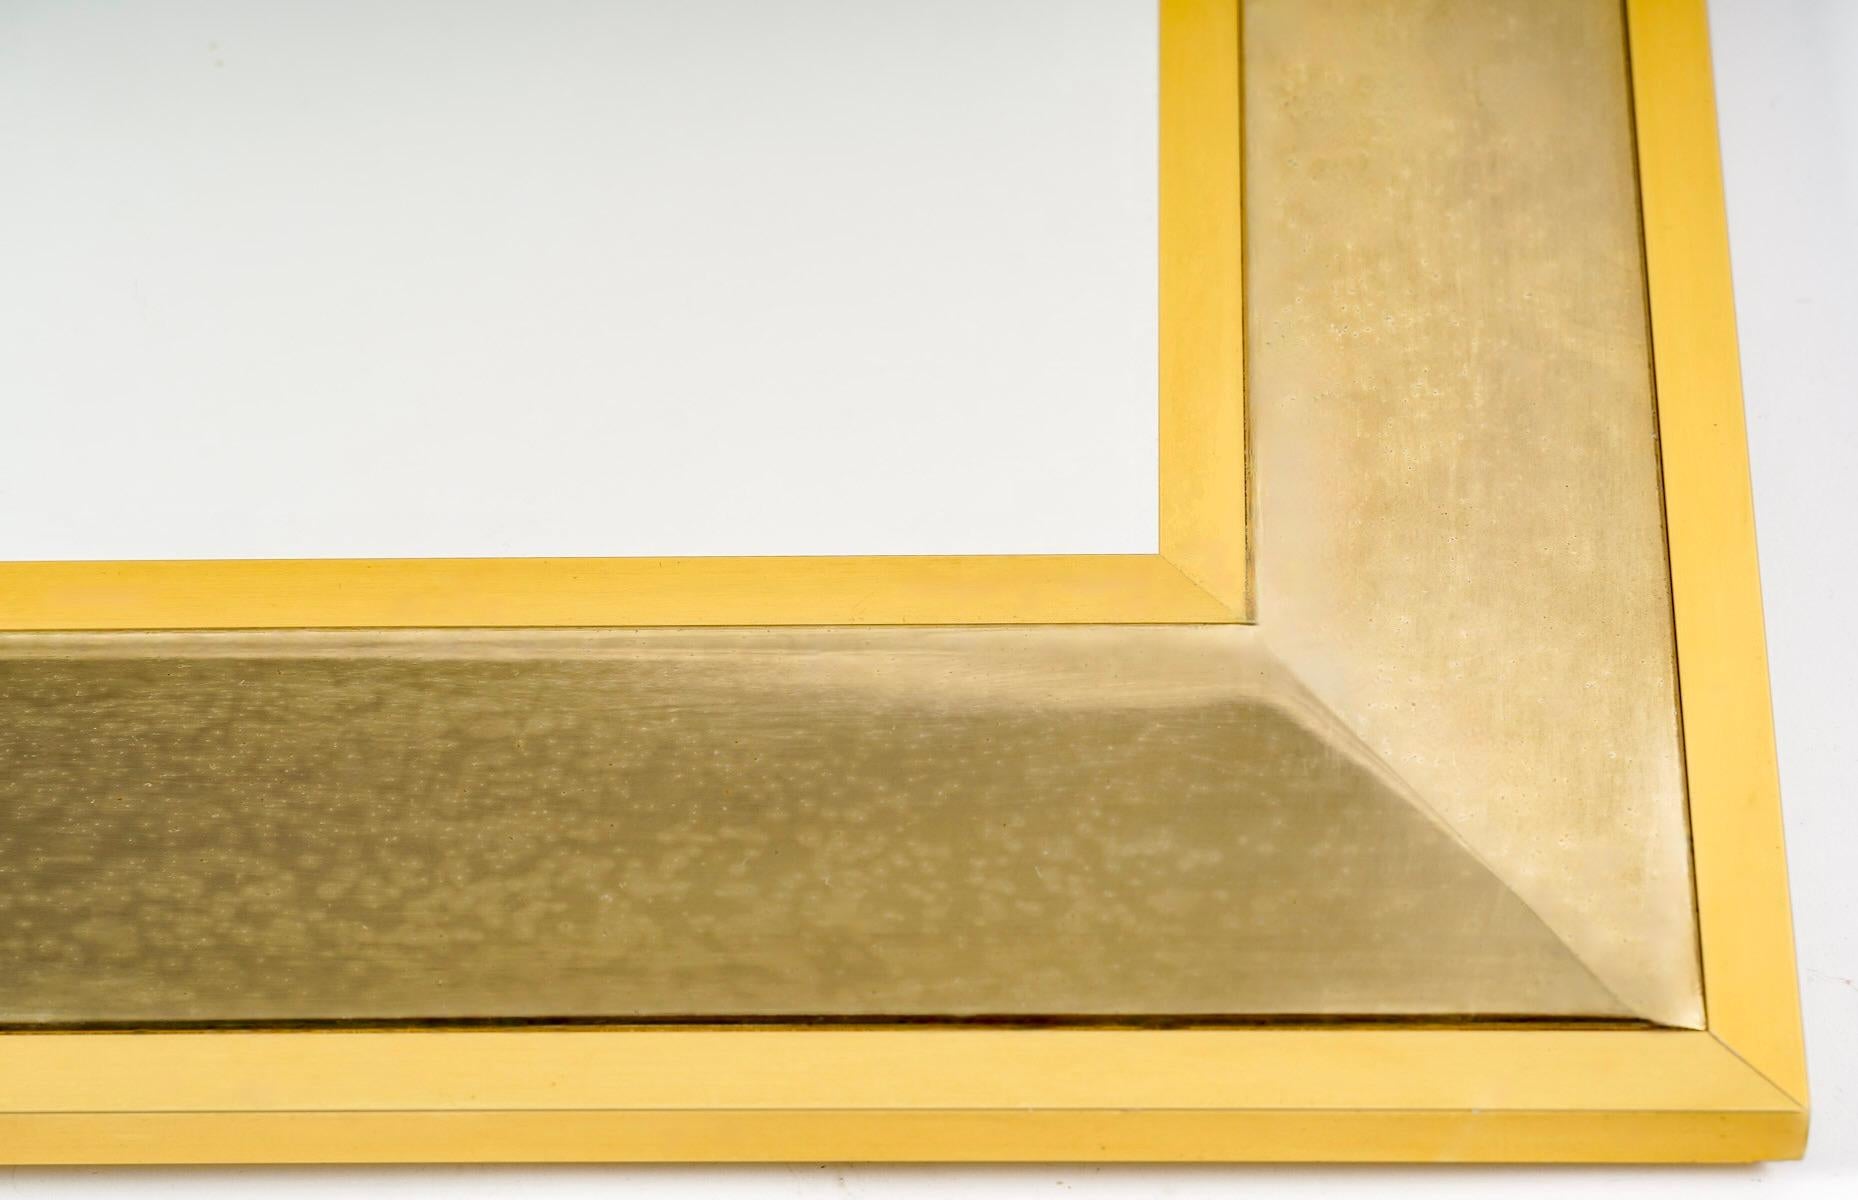 1970 Maison Roche, Spiegel aus vergoldetem Messing und Silber 

Besteht aus 3 Rahmen, 2 vergoldeten Messingrahmen, von denen einer außen und der andere innen angebracht ist. Zwischen diesen beiden Rahmen befindet sich ein dritter Rahmen aus leicht